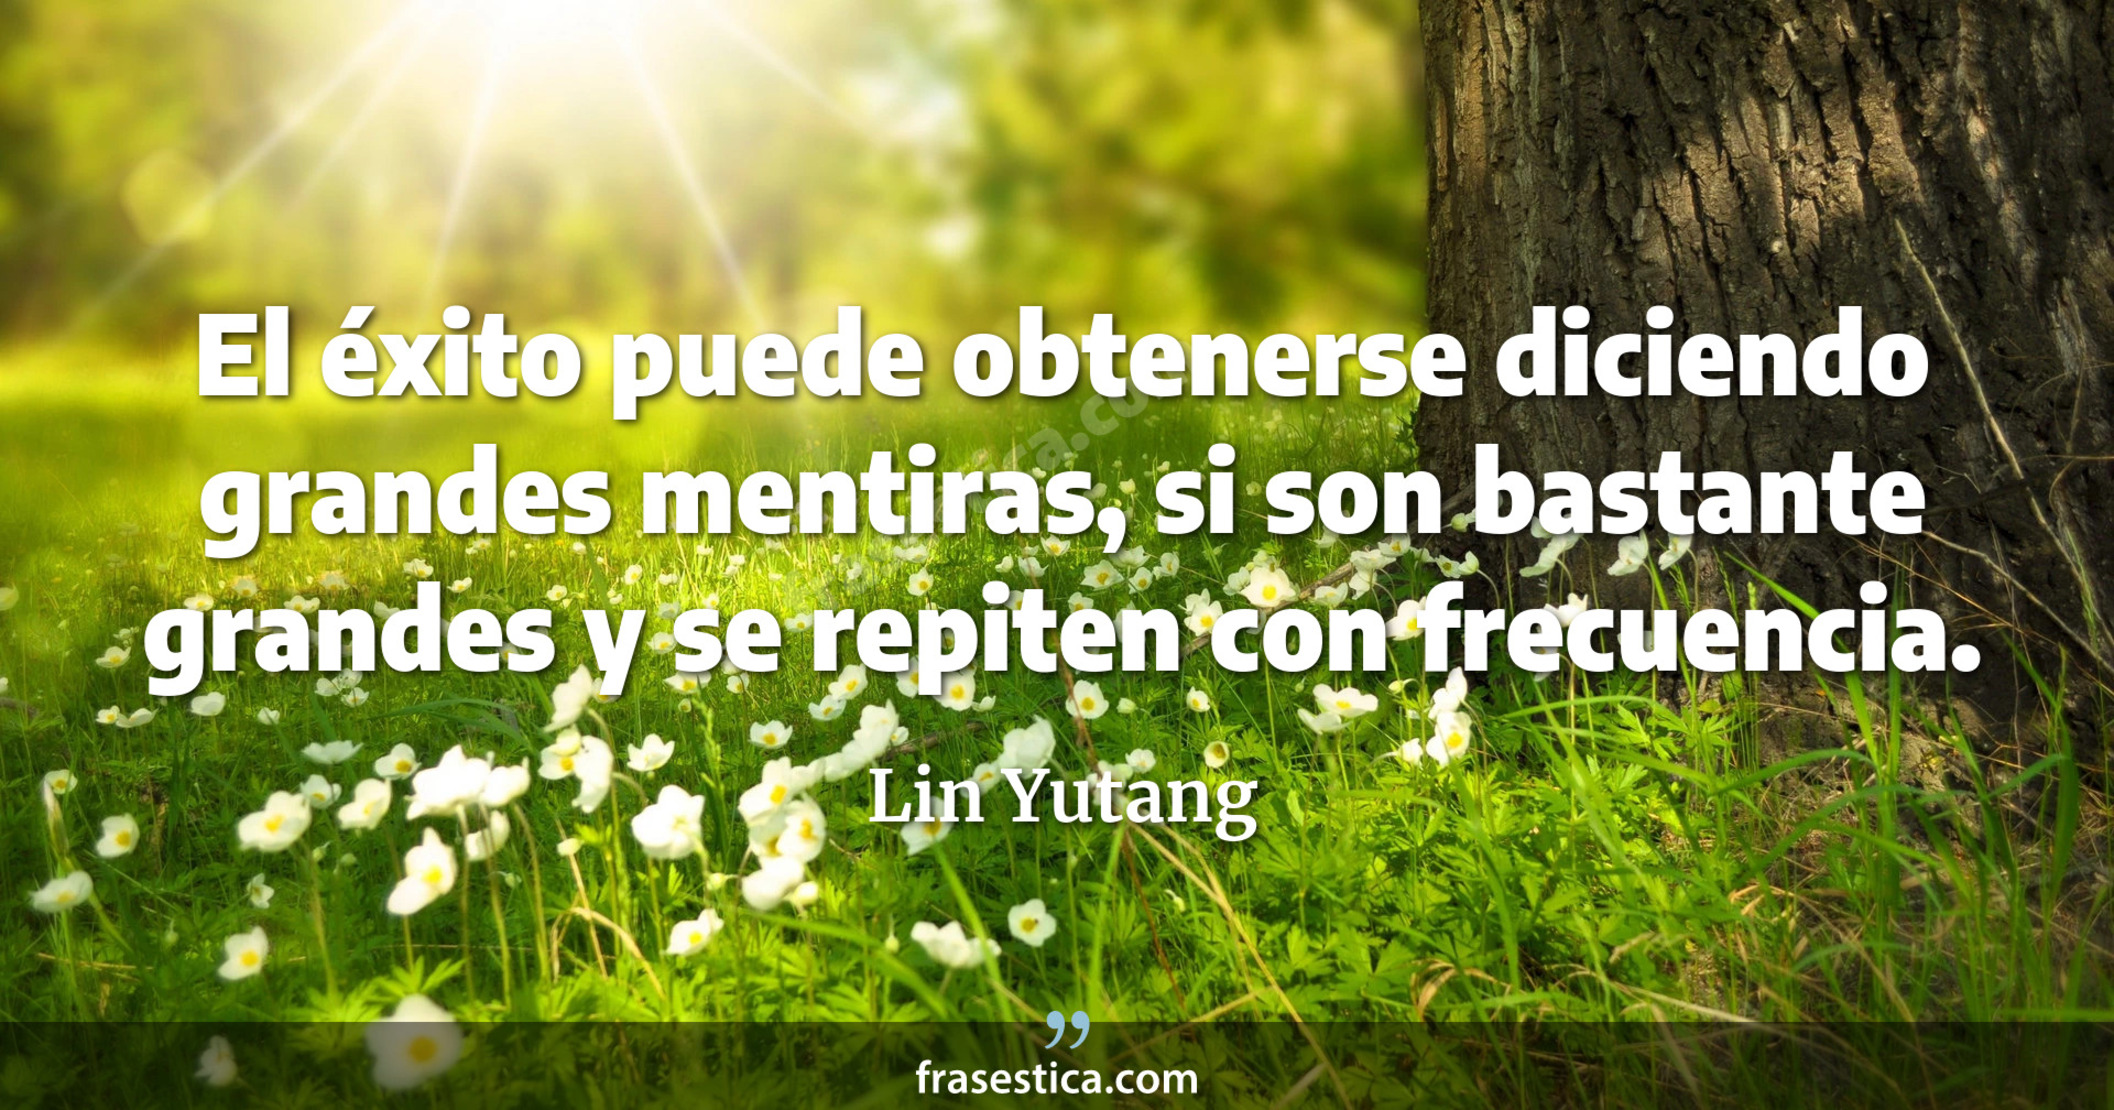 El éxito puede obtenerse diciendo grandes mentiras, si son bastante grandes y se repiten con frecuencia. - Lin Yutang